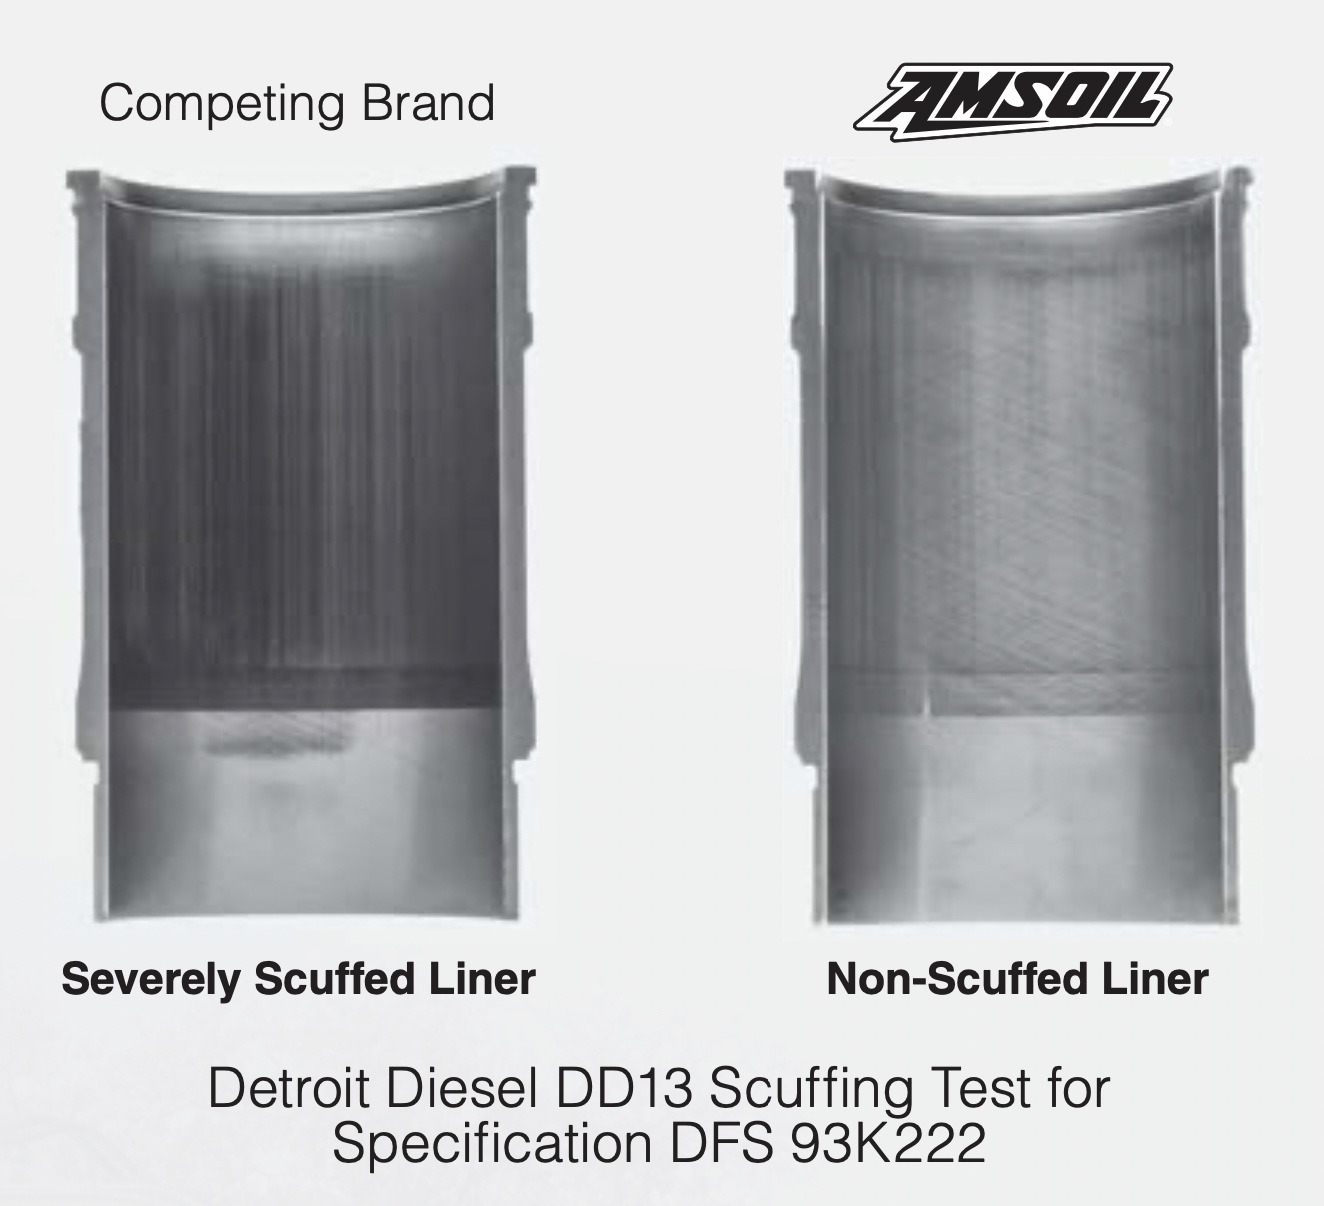 Detroit Diesel DD13 Scuffing Test Results